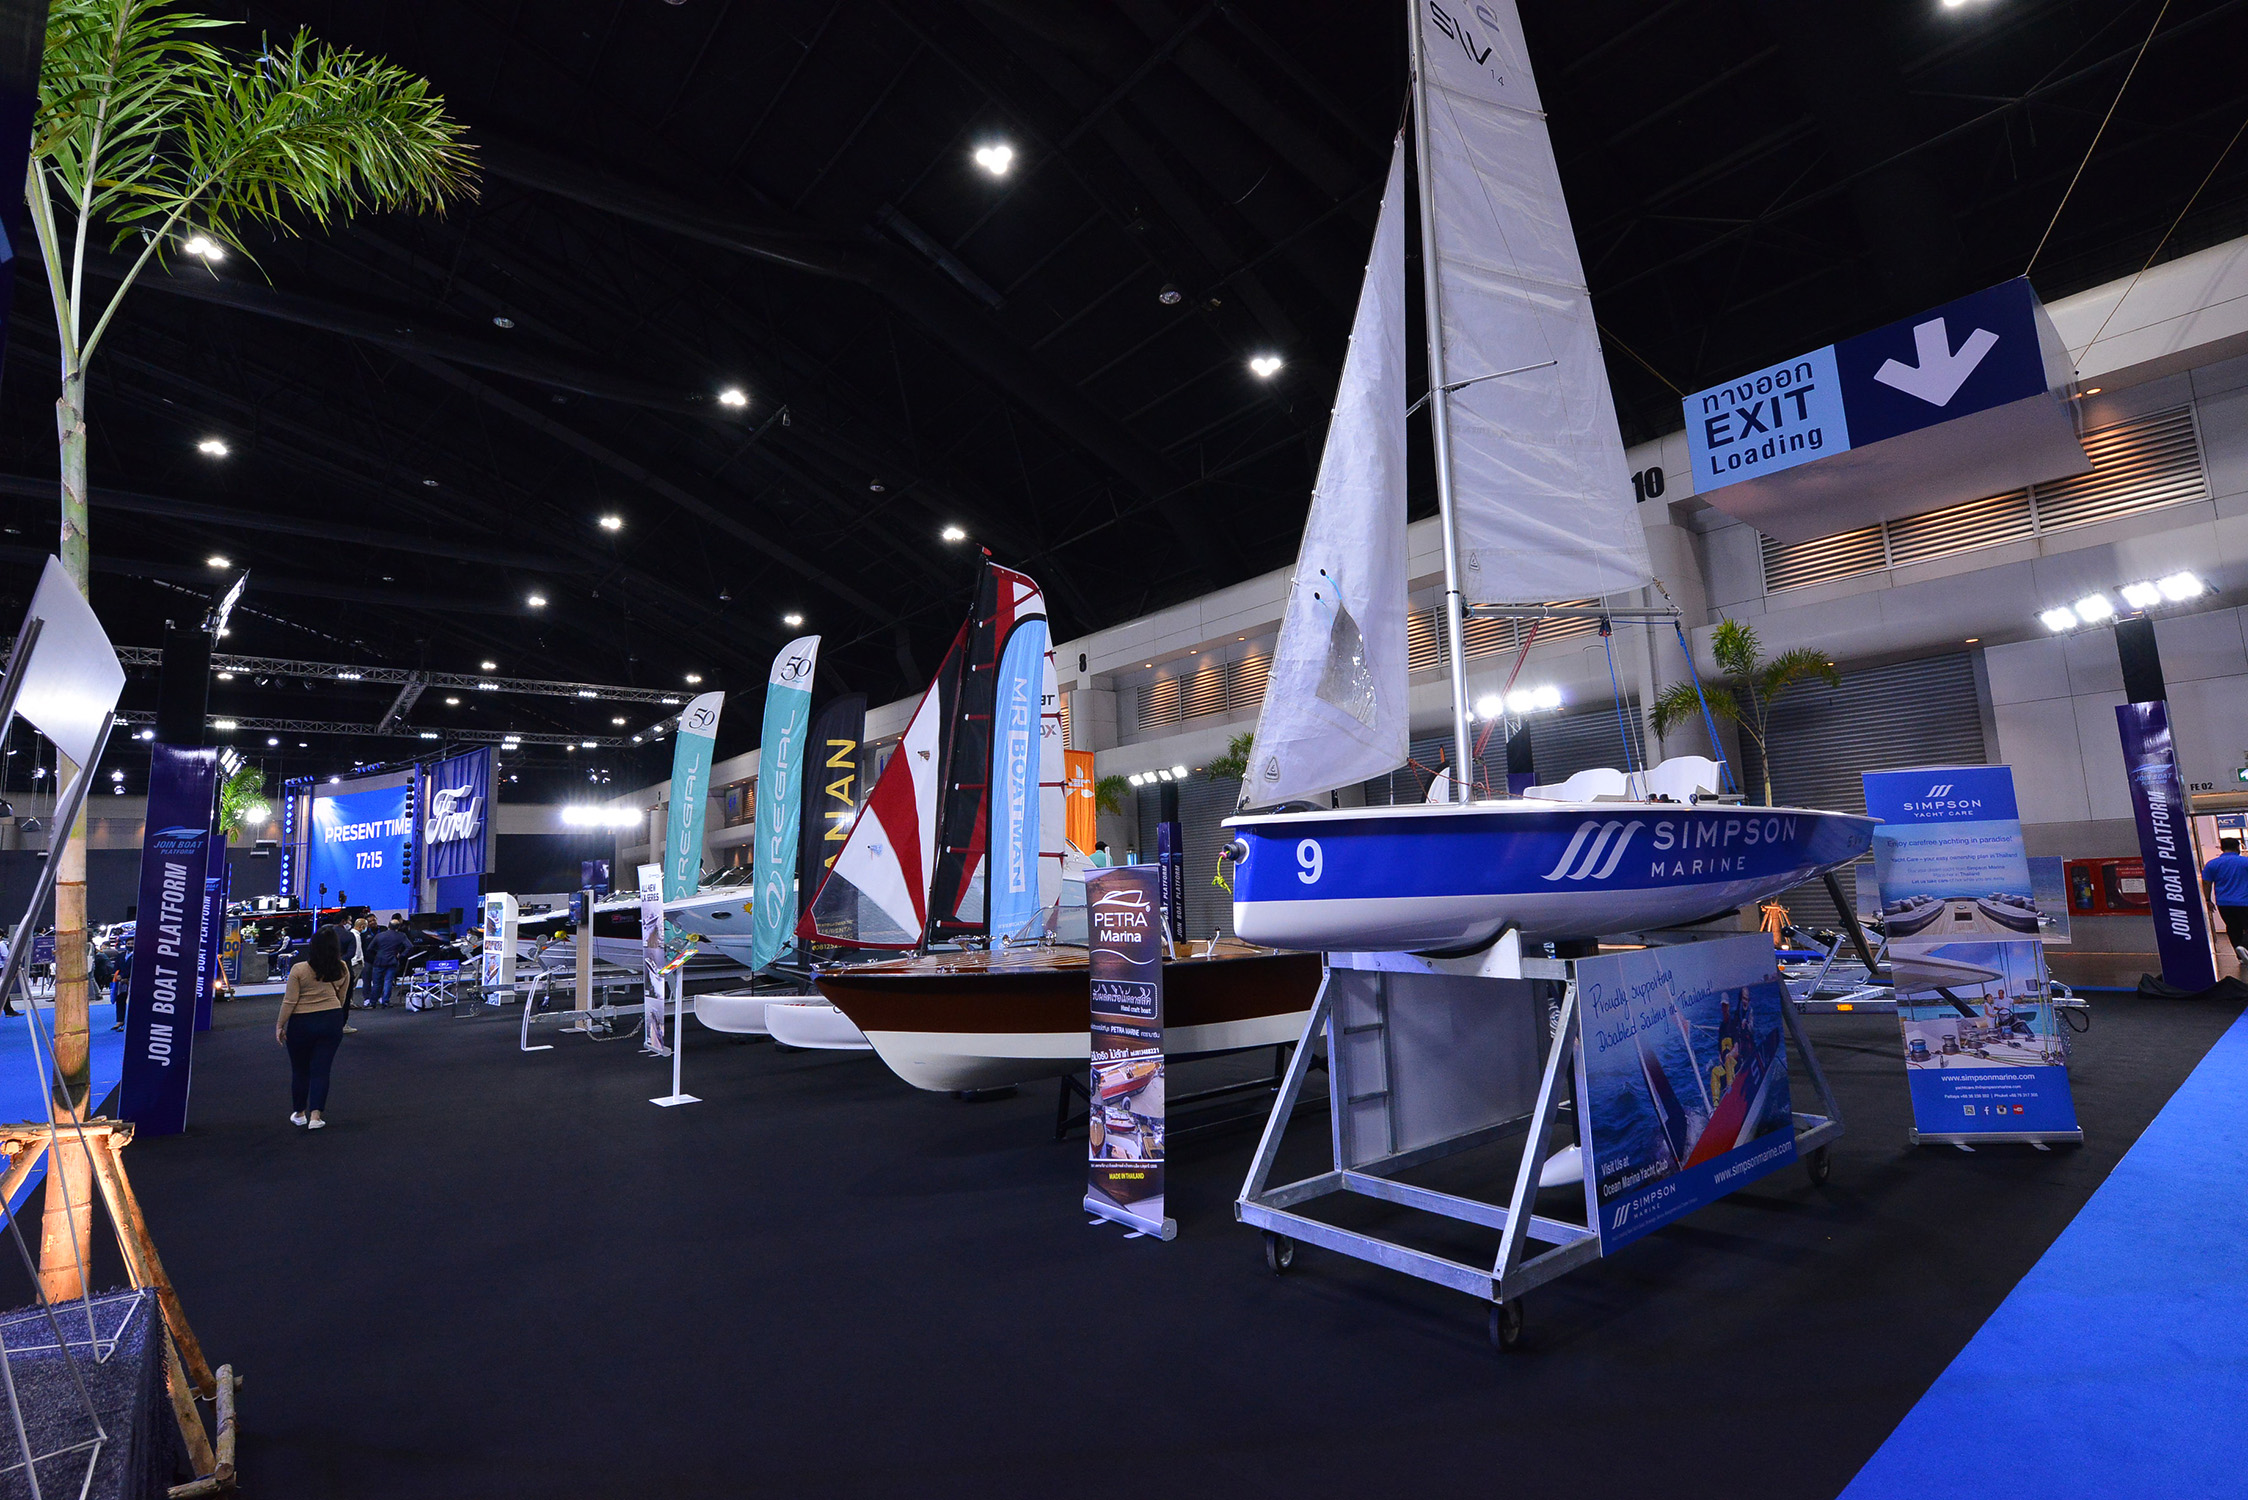 เชิญชมนิทรรศการเรือเทิดพระเกียรติในหลวง ร.9 ในงาน MOTOR EXPO 2020